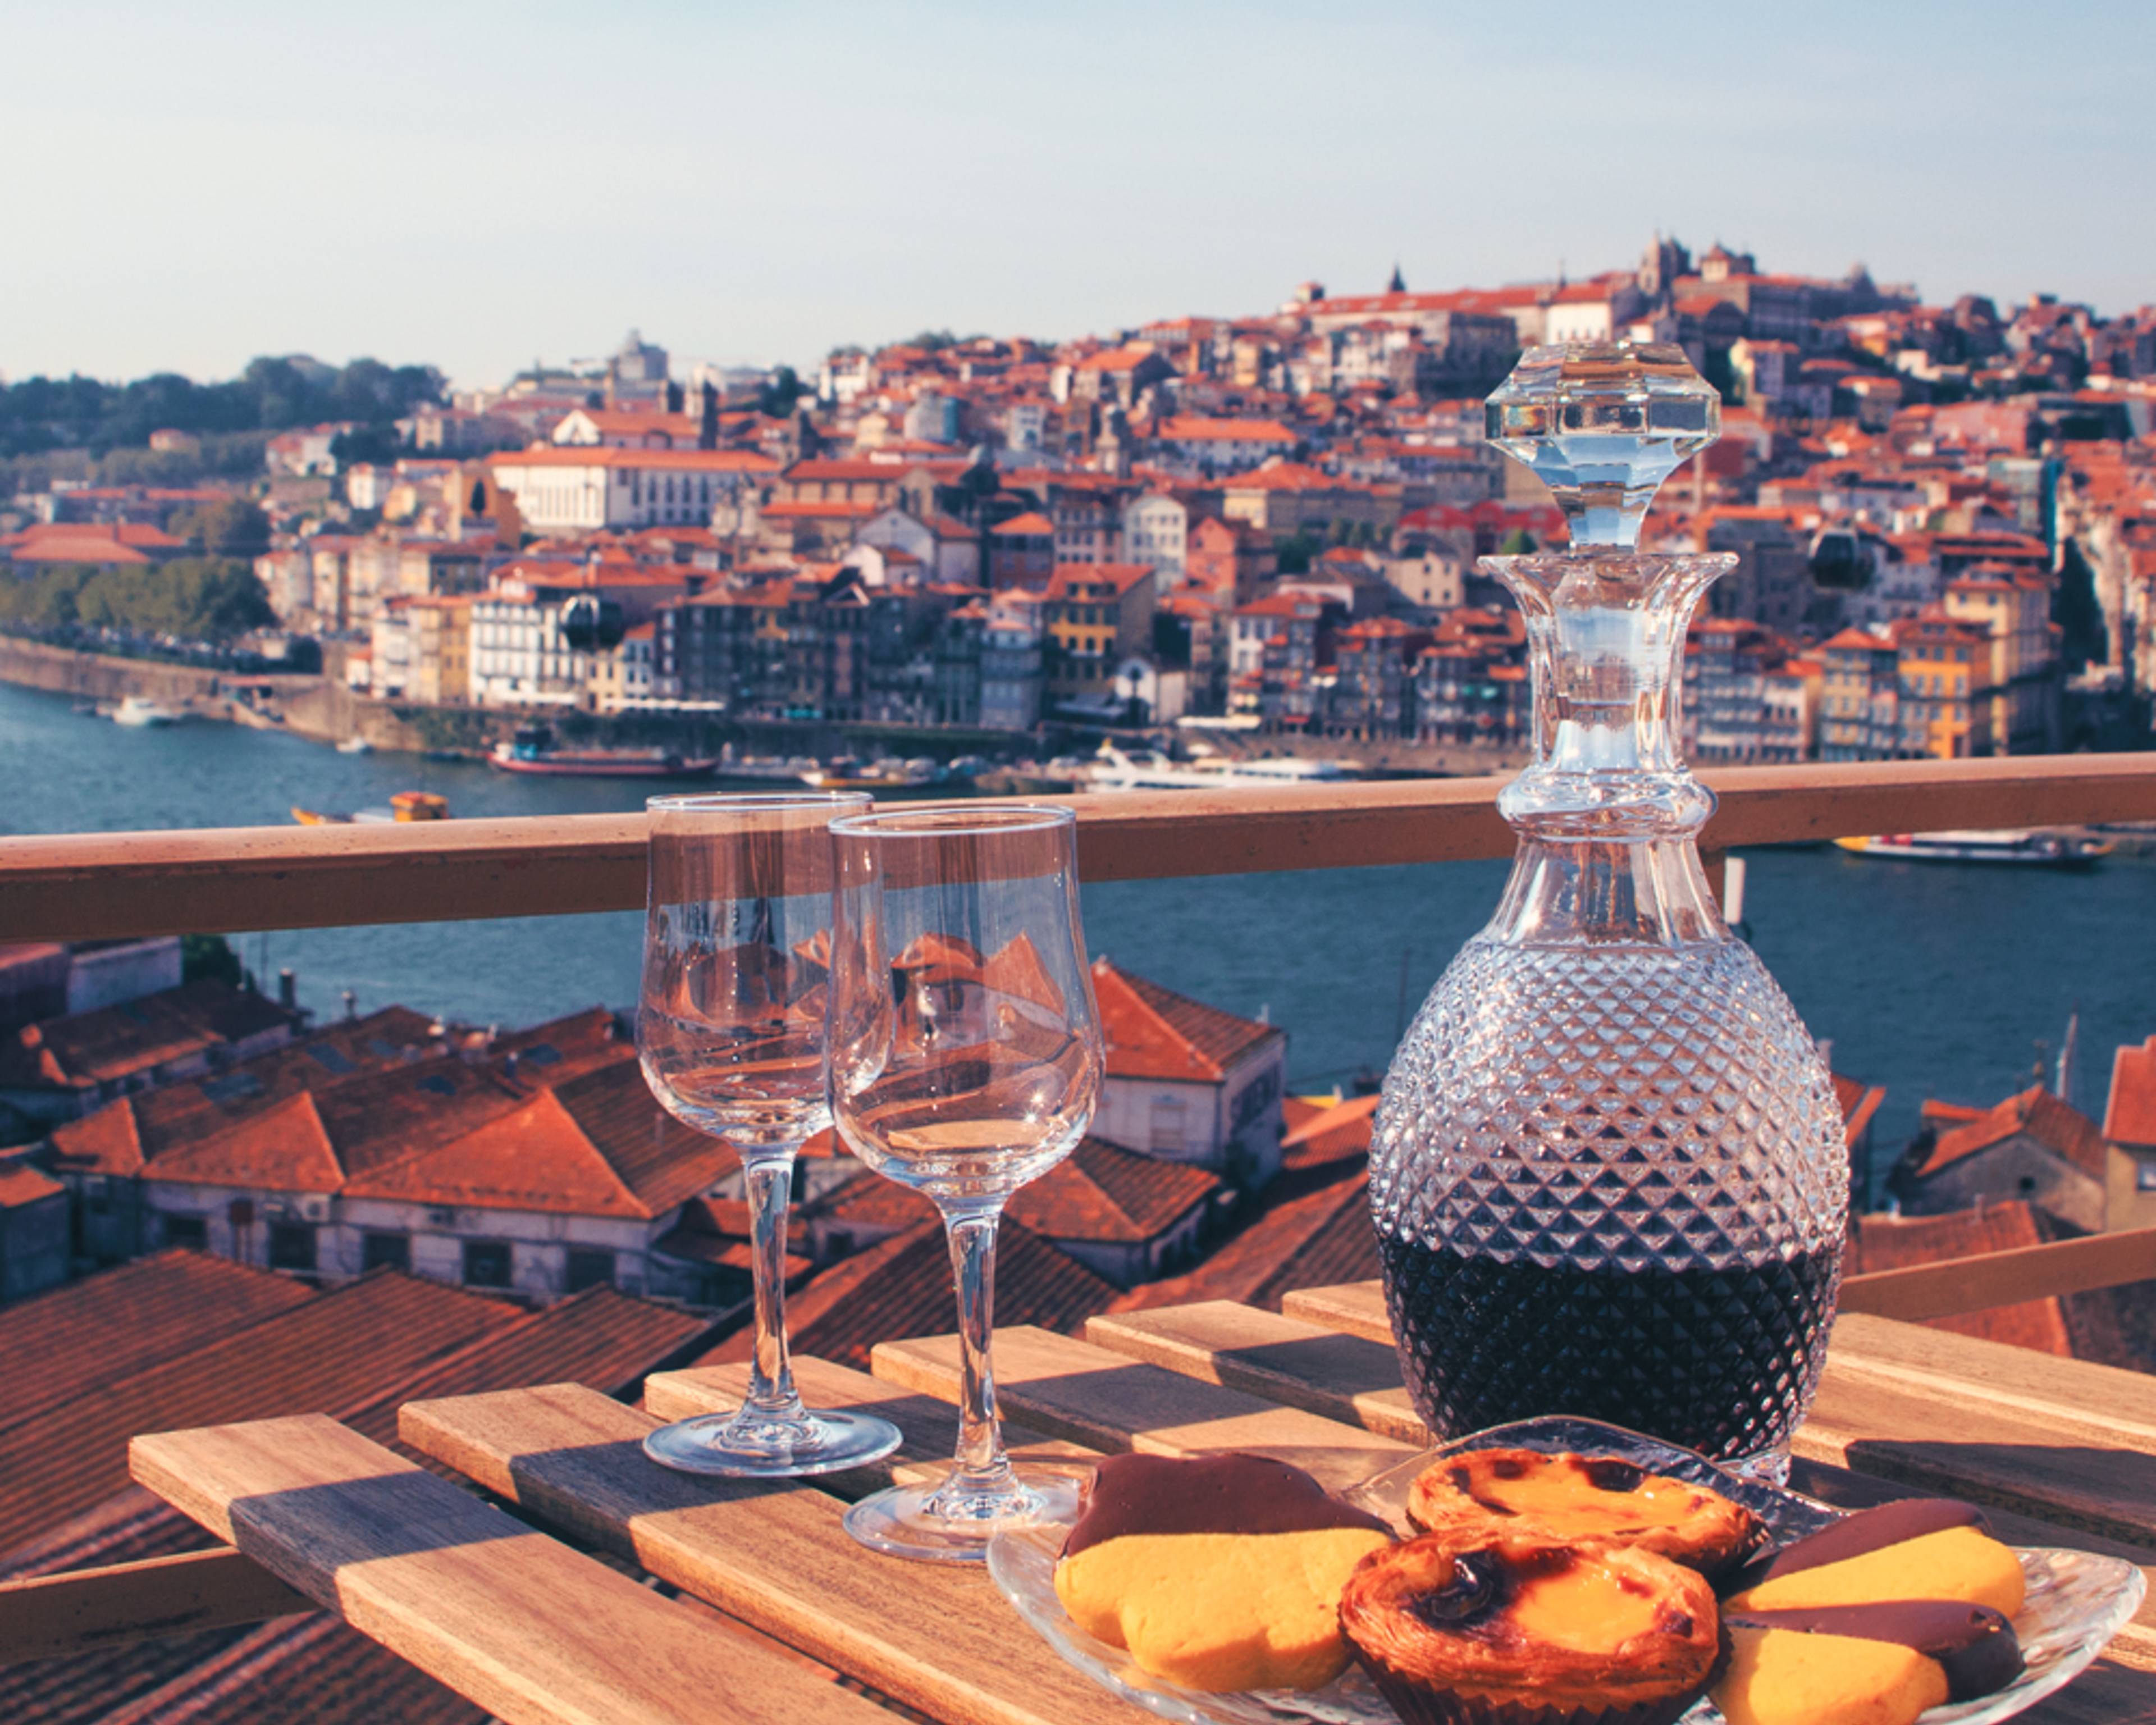 Crea tu viaje gastronómico y enológico por Portugal 100% a medida